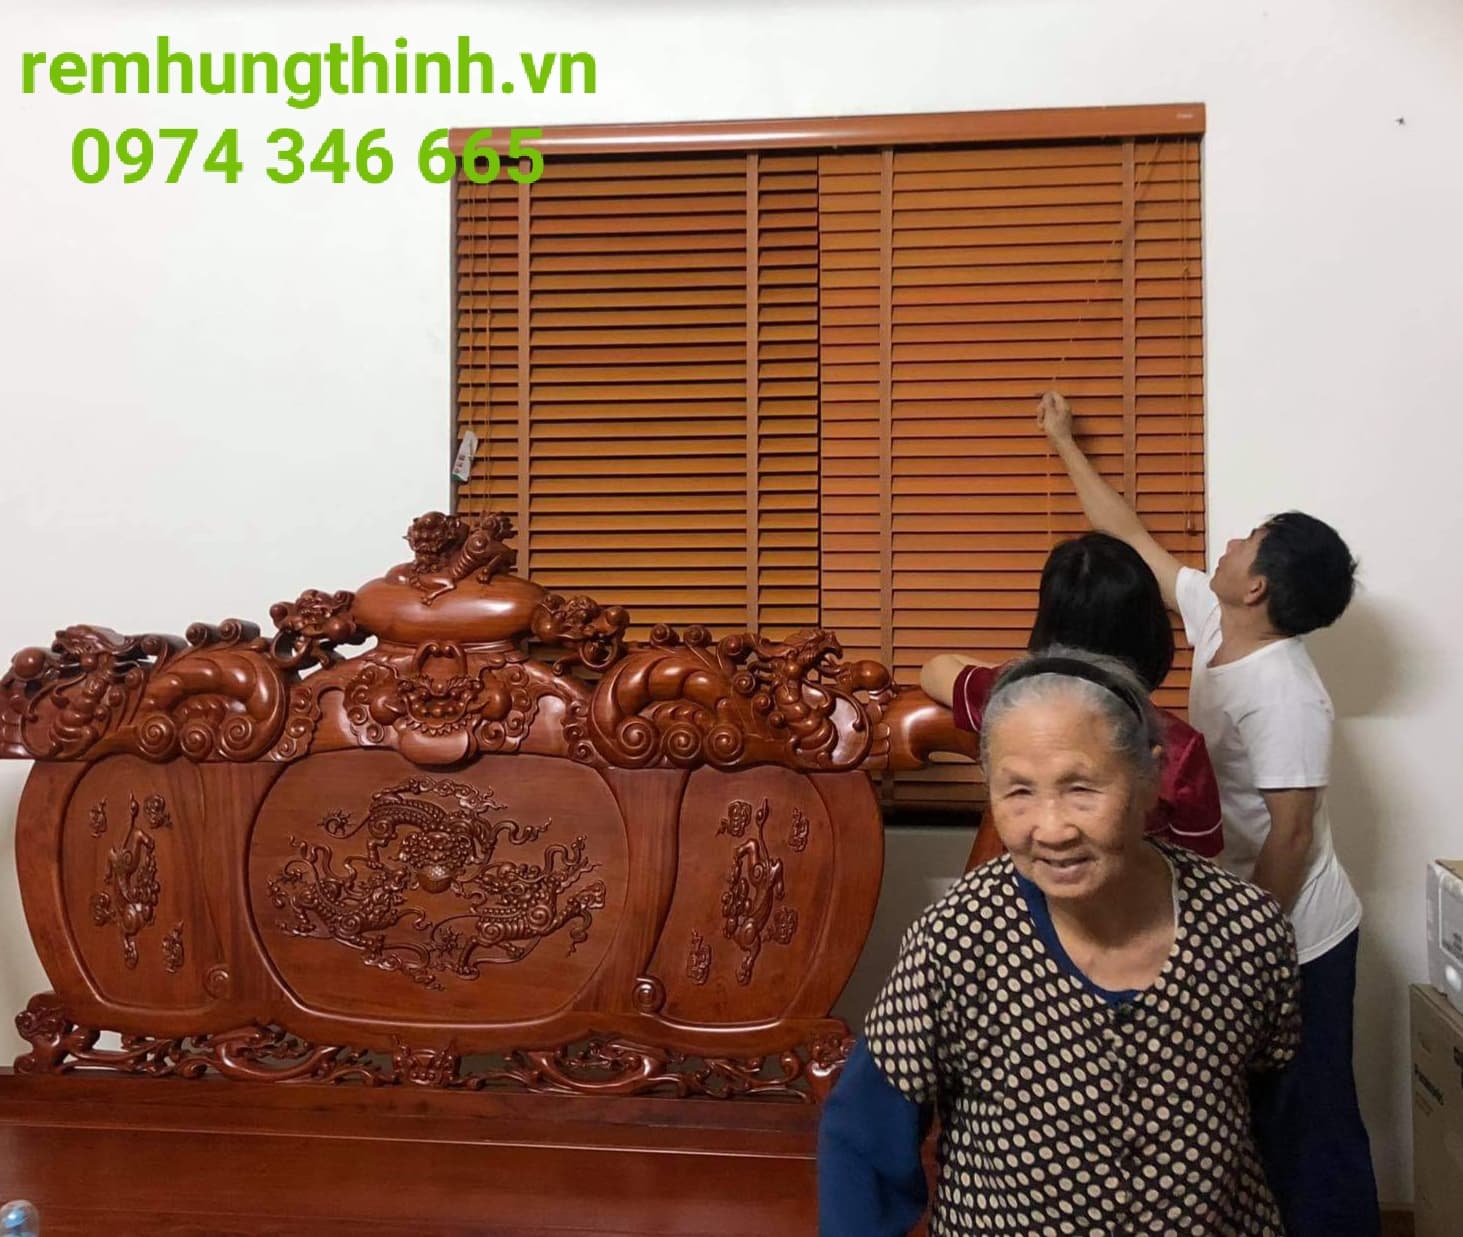 Rèm sáo gỗ tự nhiên uy tín tại phường Nhân chính quận Thanh Xuân Hà Nội